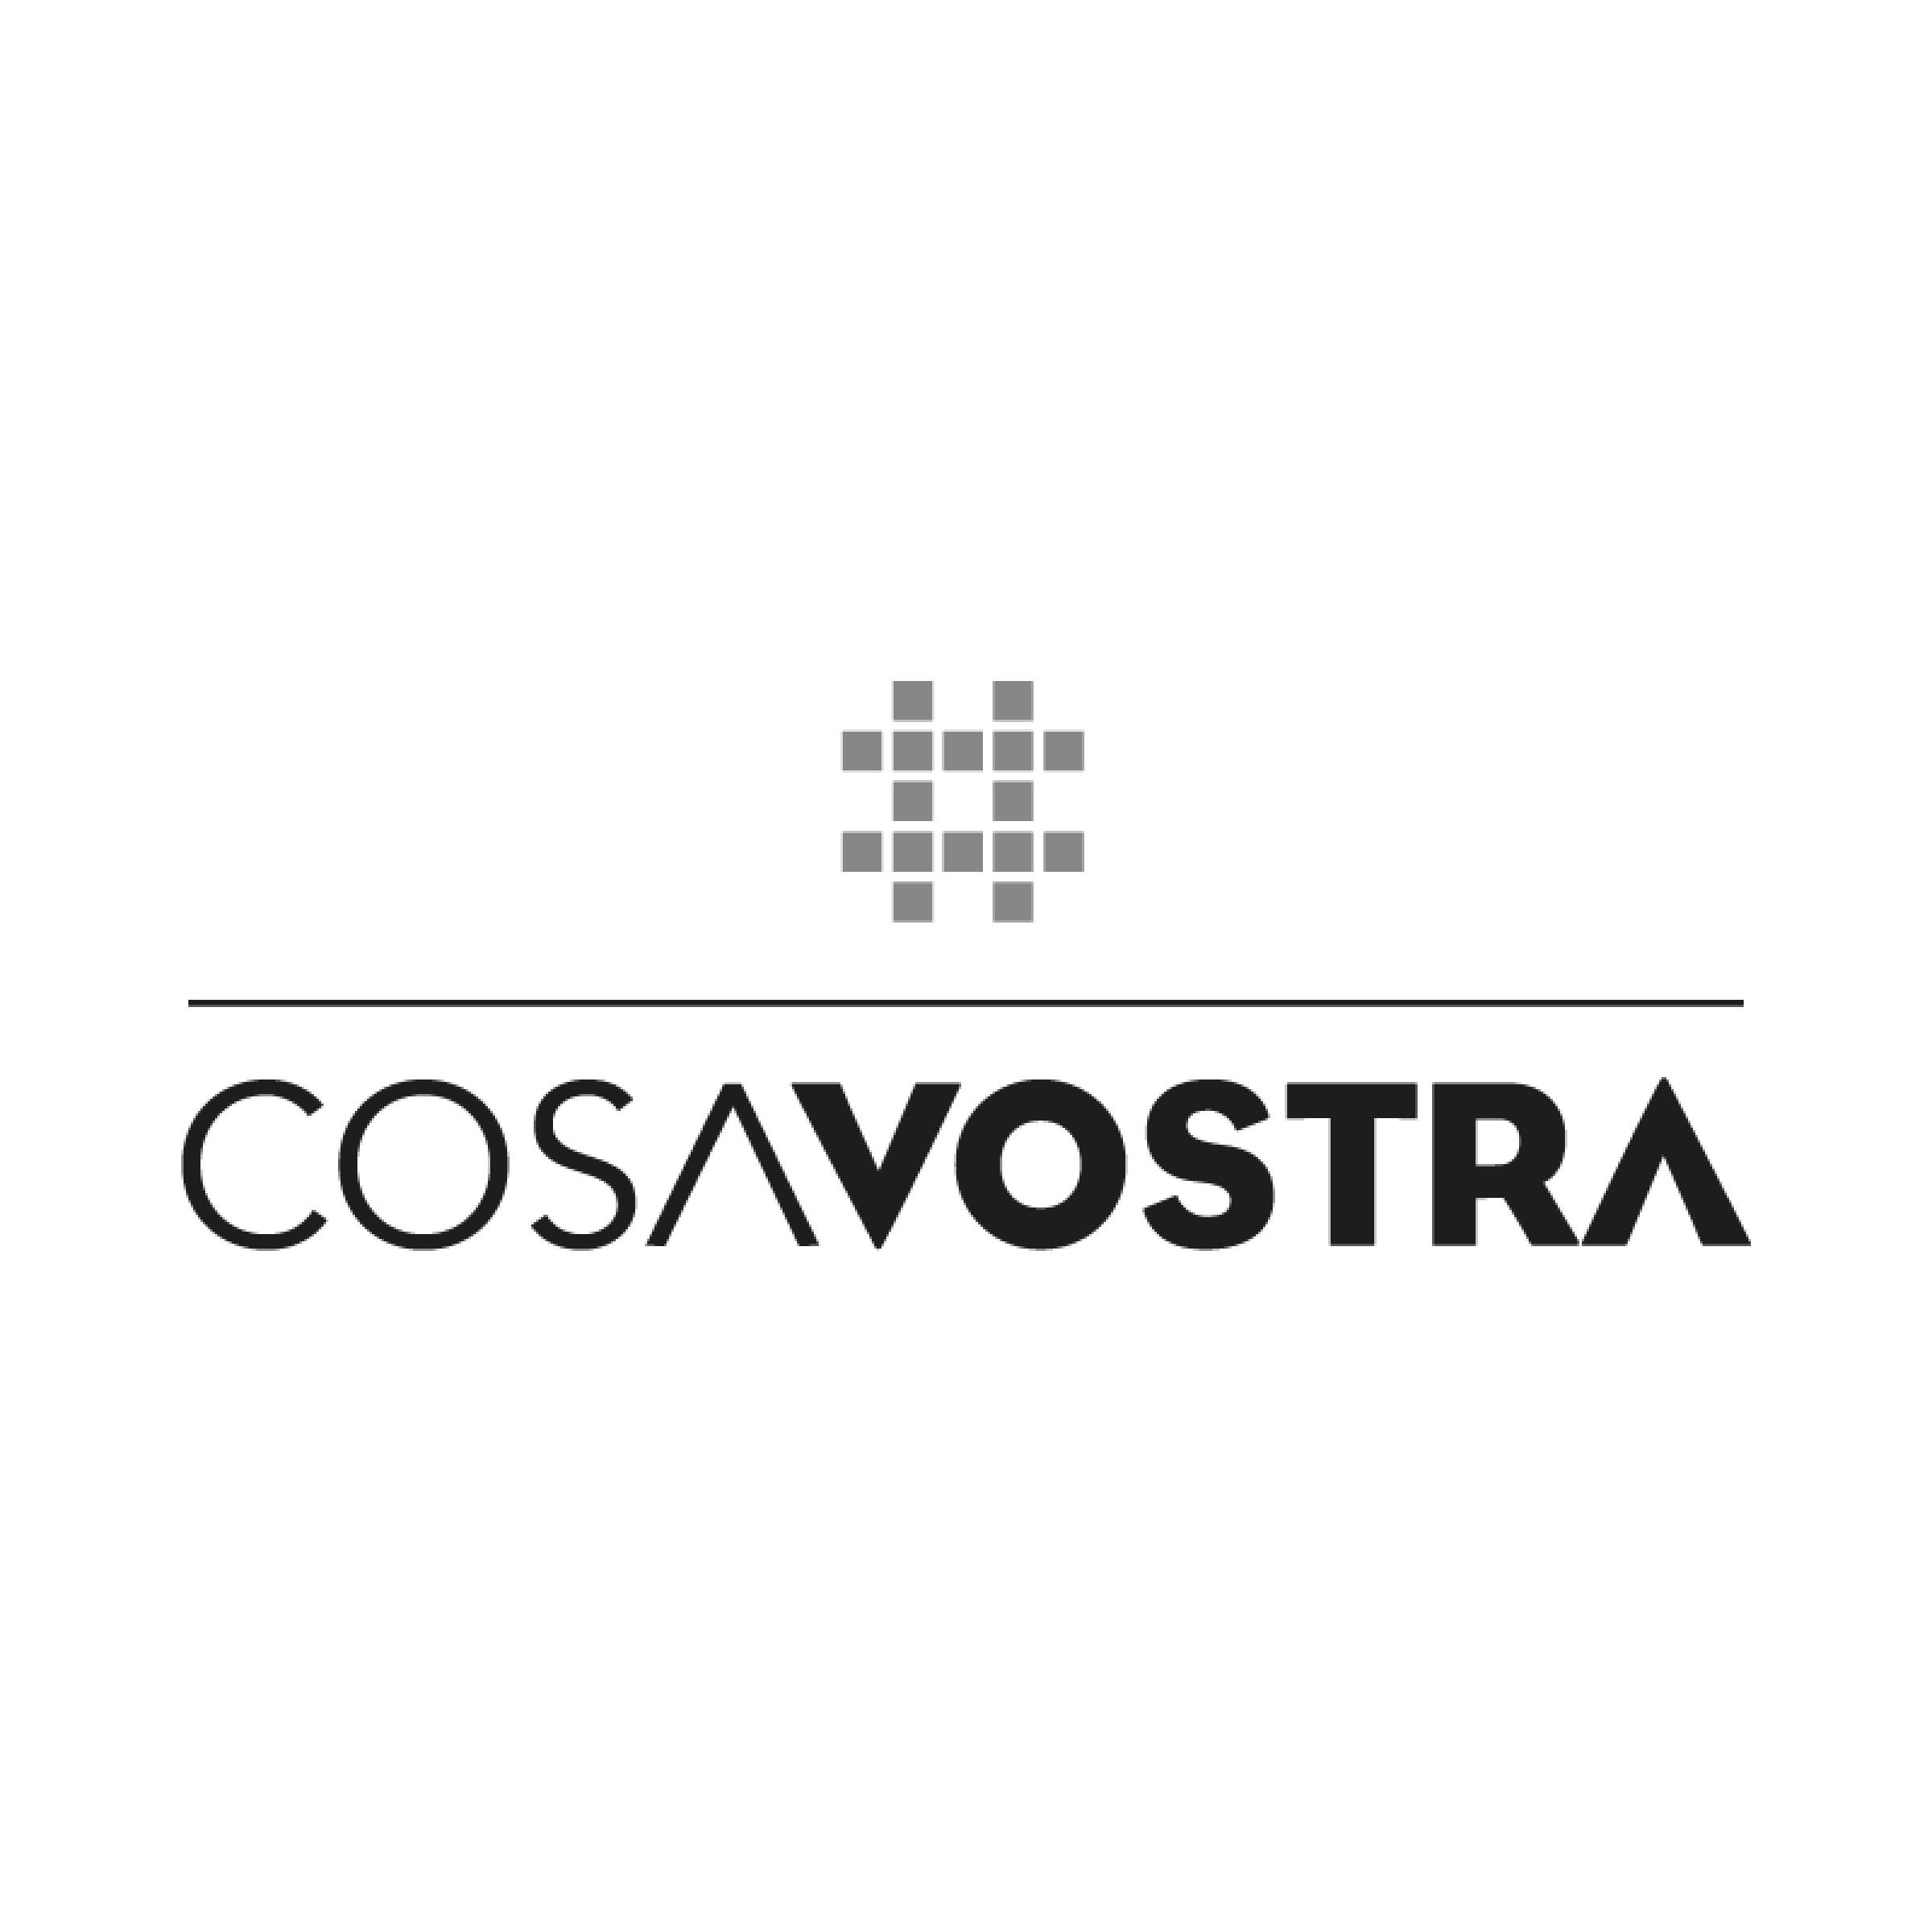 (c) Cosavostra.com